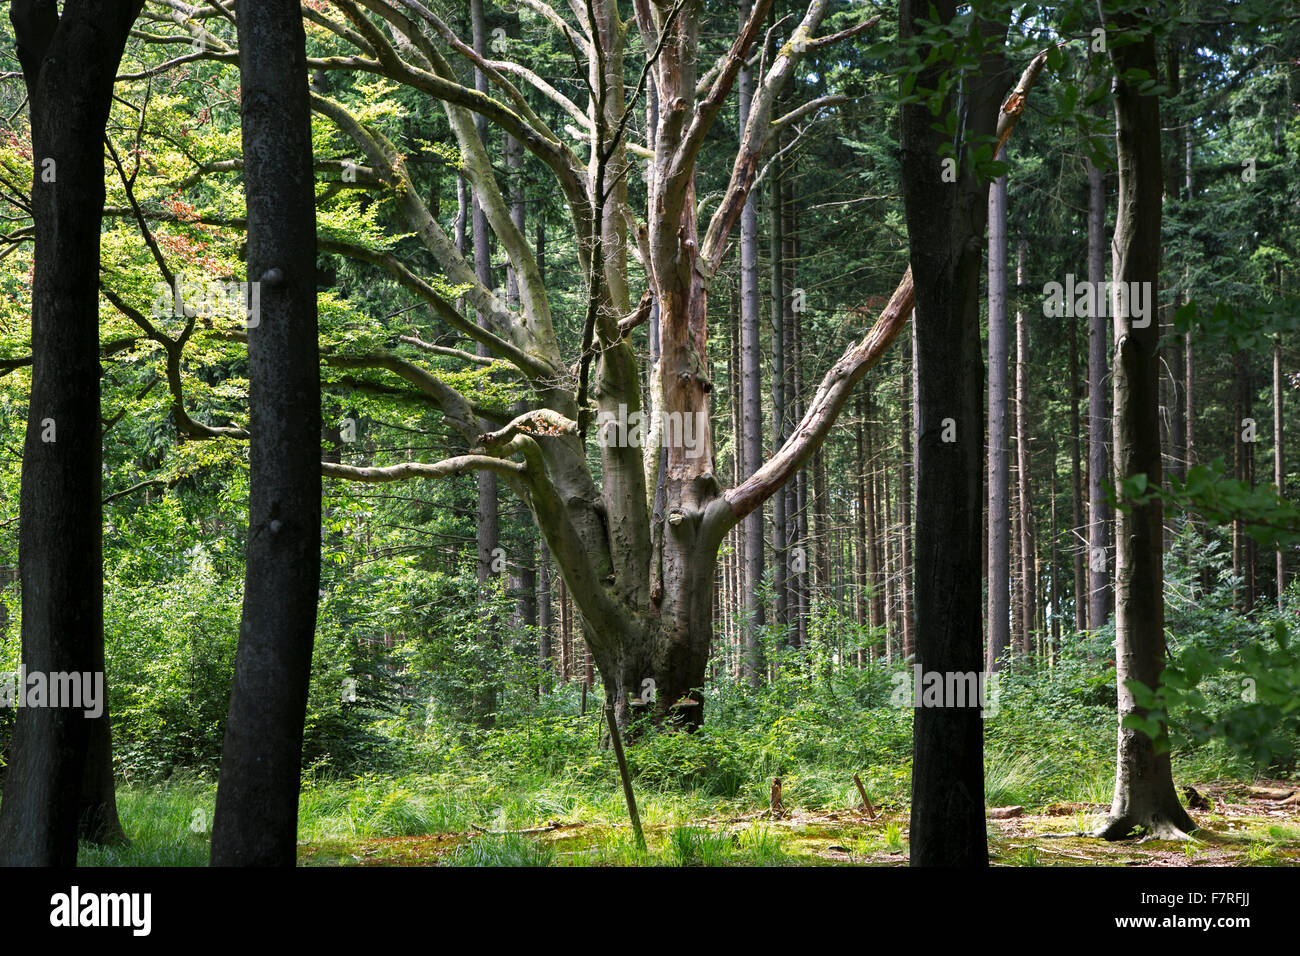 Vieux hêtre (Fagus sylvatica) au milieu des pins dans une forêt mixte Banque D'Images